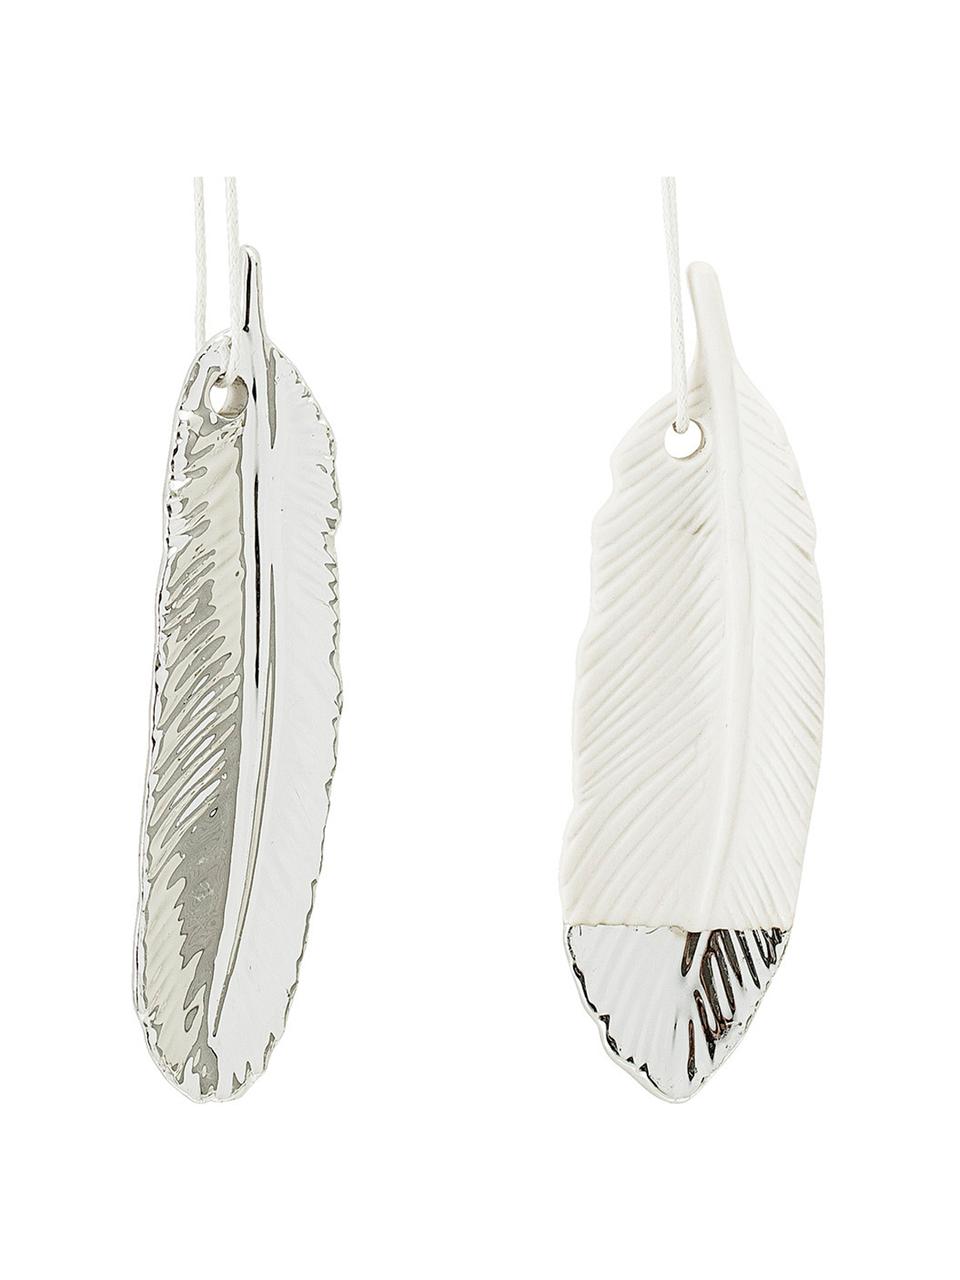 Decoratieve hangers Feathers, 2-delig., Steengoed, Zilverkleurig, wit, 3 x 10 cm